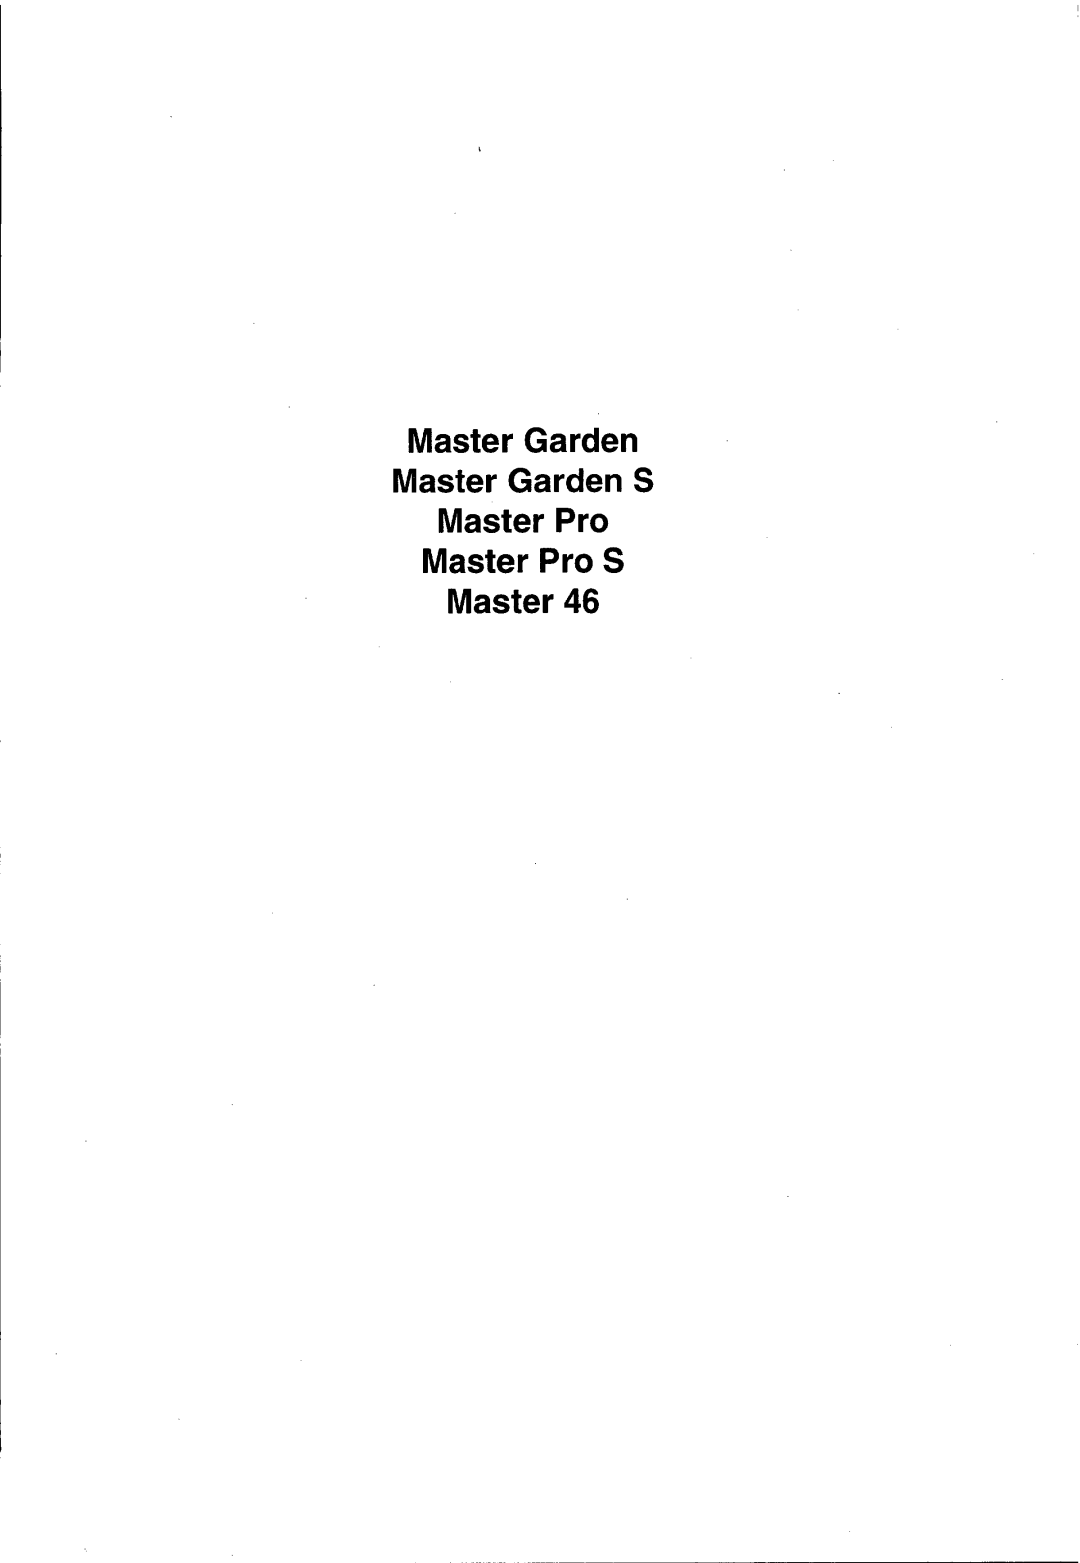 Husqvarna Master Garden S, Master Pro S manual 